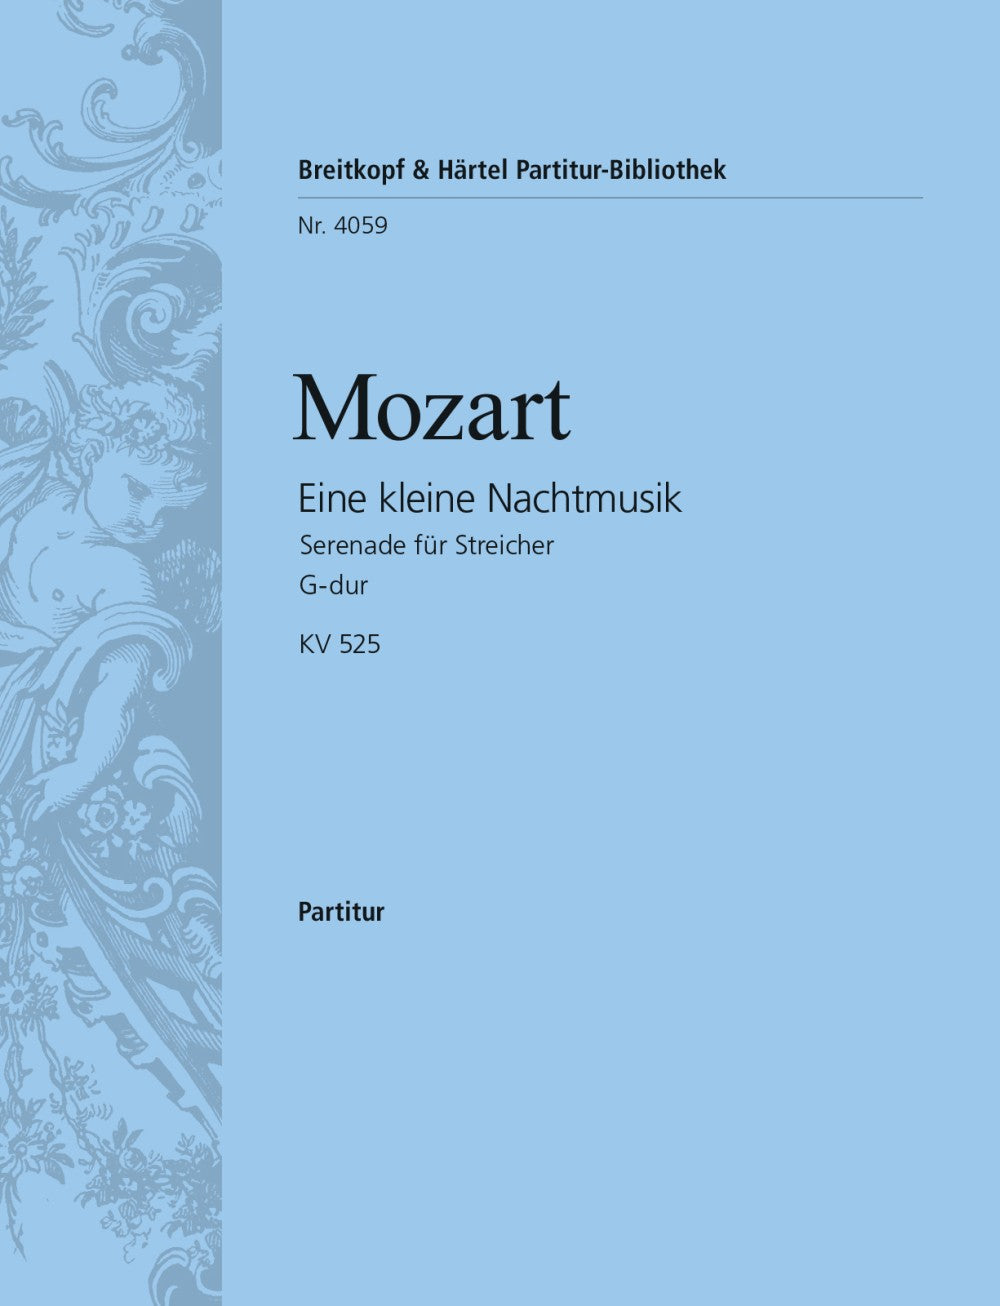 Mozart Eine kleine Nachtmusik in G major K. 525 Full Score